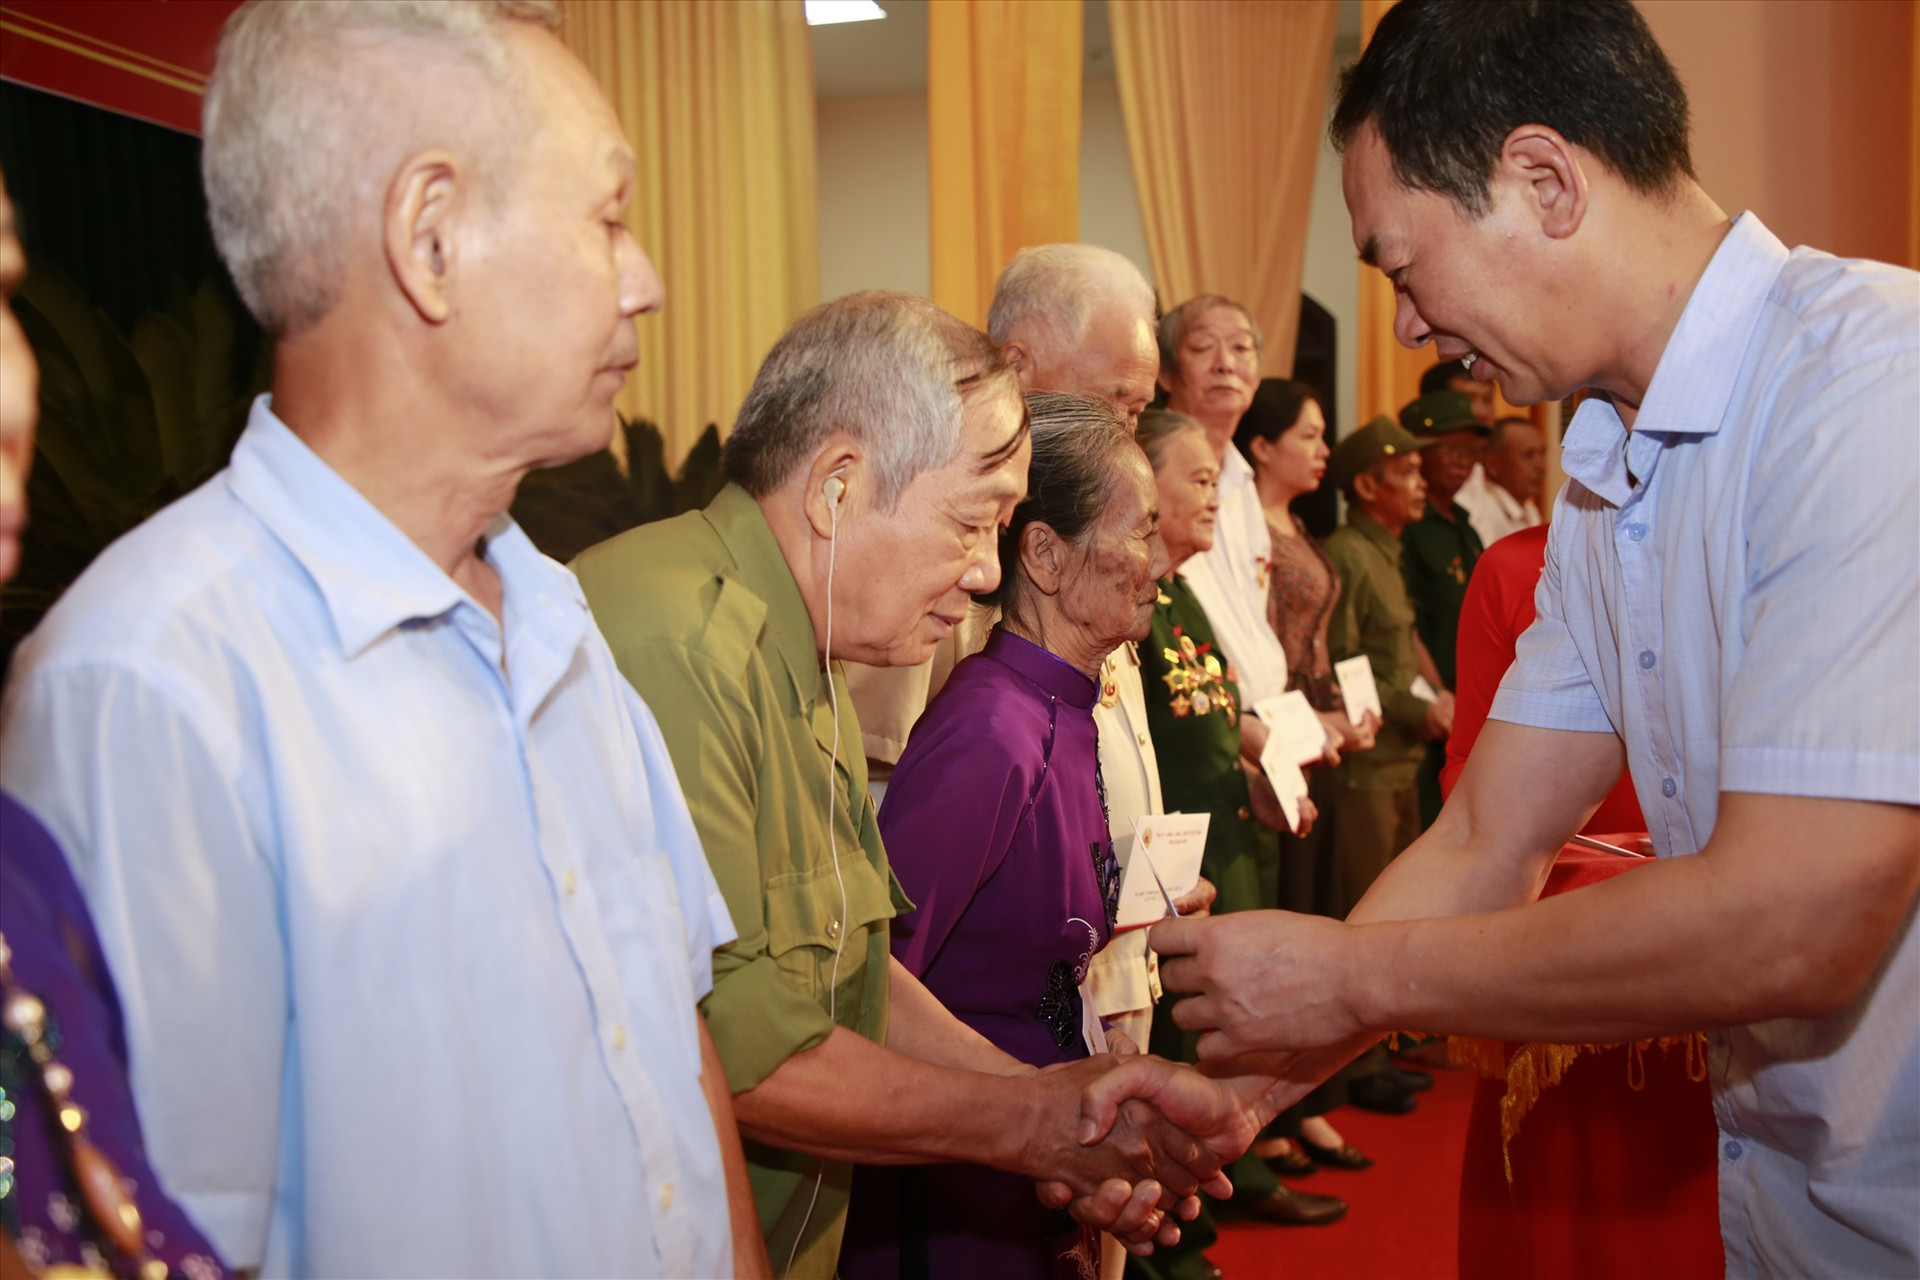 Đồng chí Trịnh Tuấn Sinh - Phó Bí thư Tỉnh ủy Thanh Hóa tặng quà cho các đại biểu tại buổi gặp mặt. Ảnh: T.C